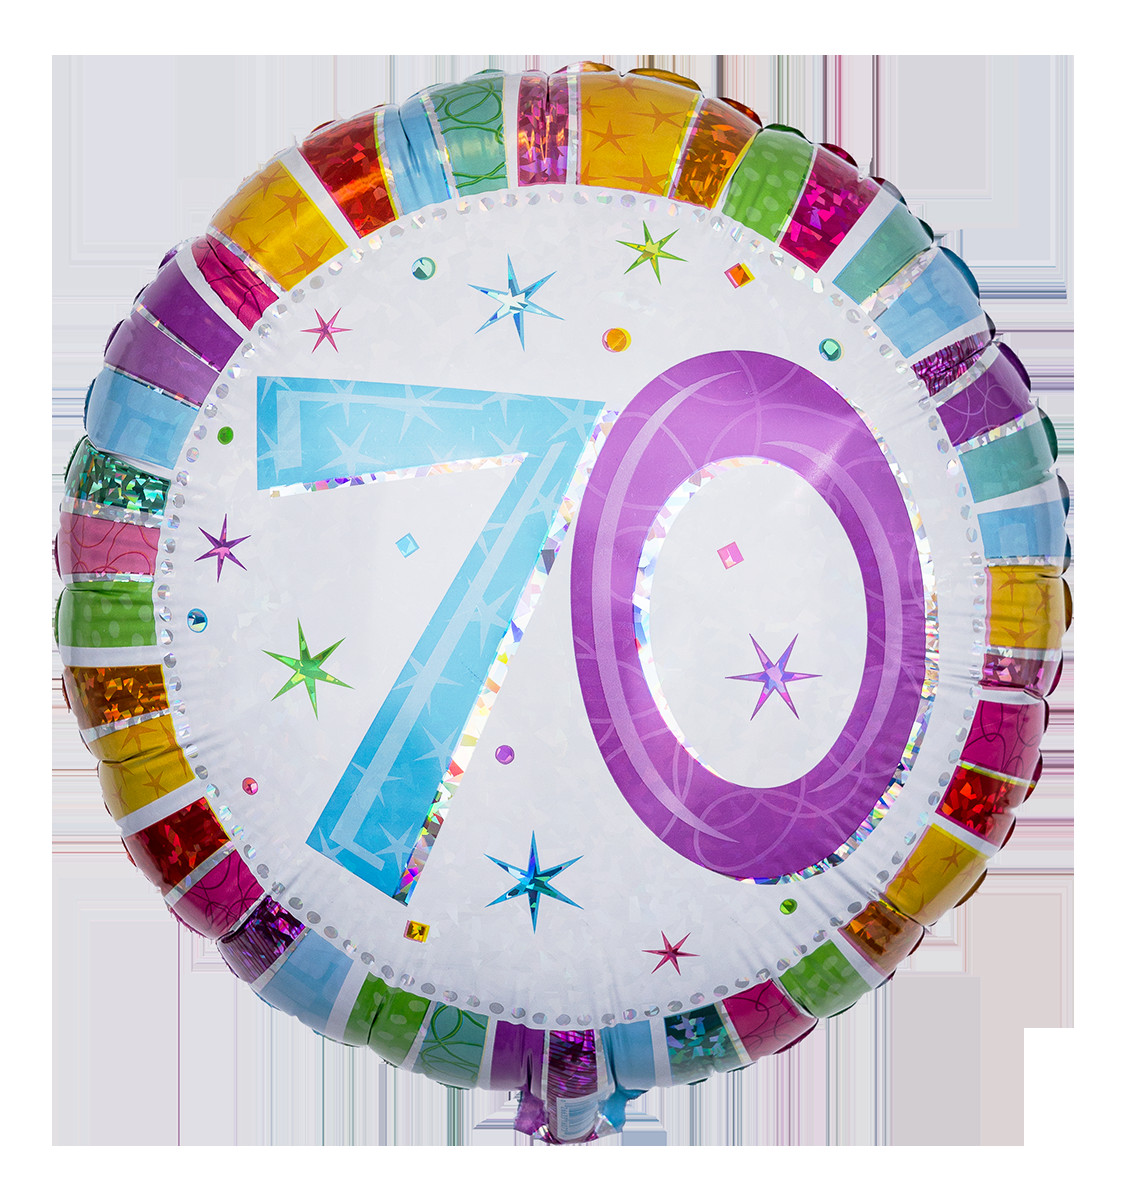 Geburtstagswünsche 70 Geburtstag
 Verschicken Sie Ballongrüße zum 70